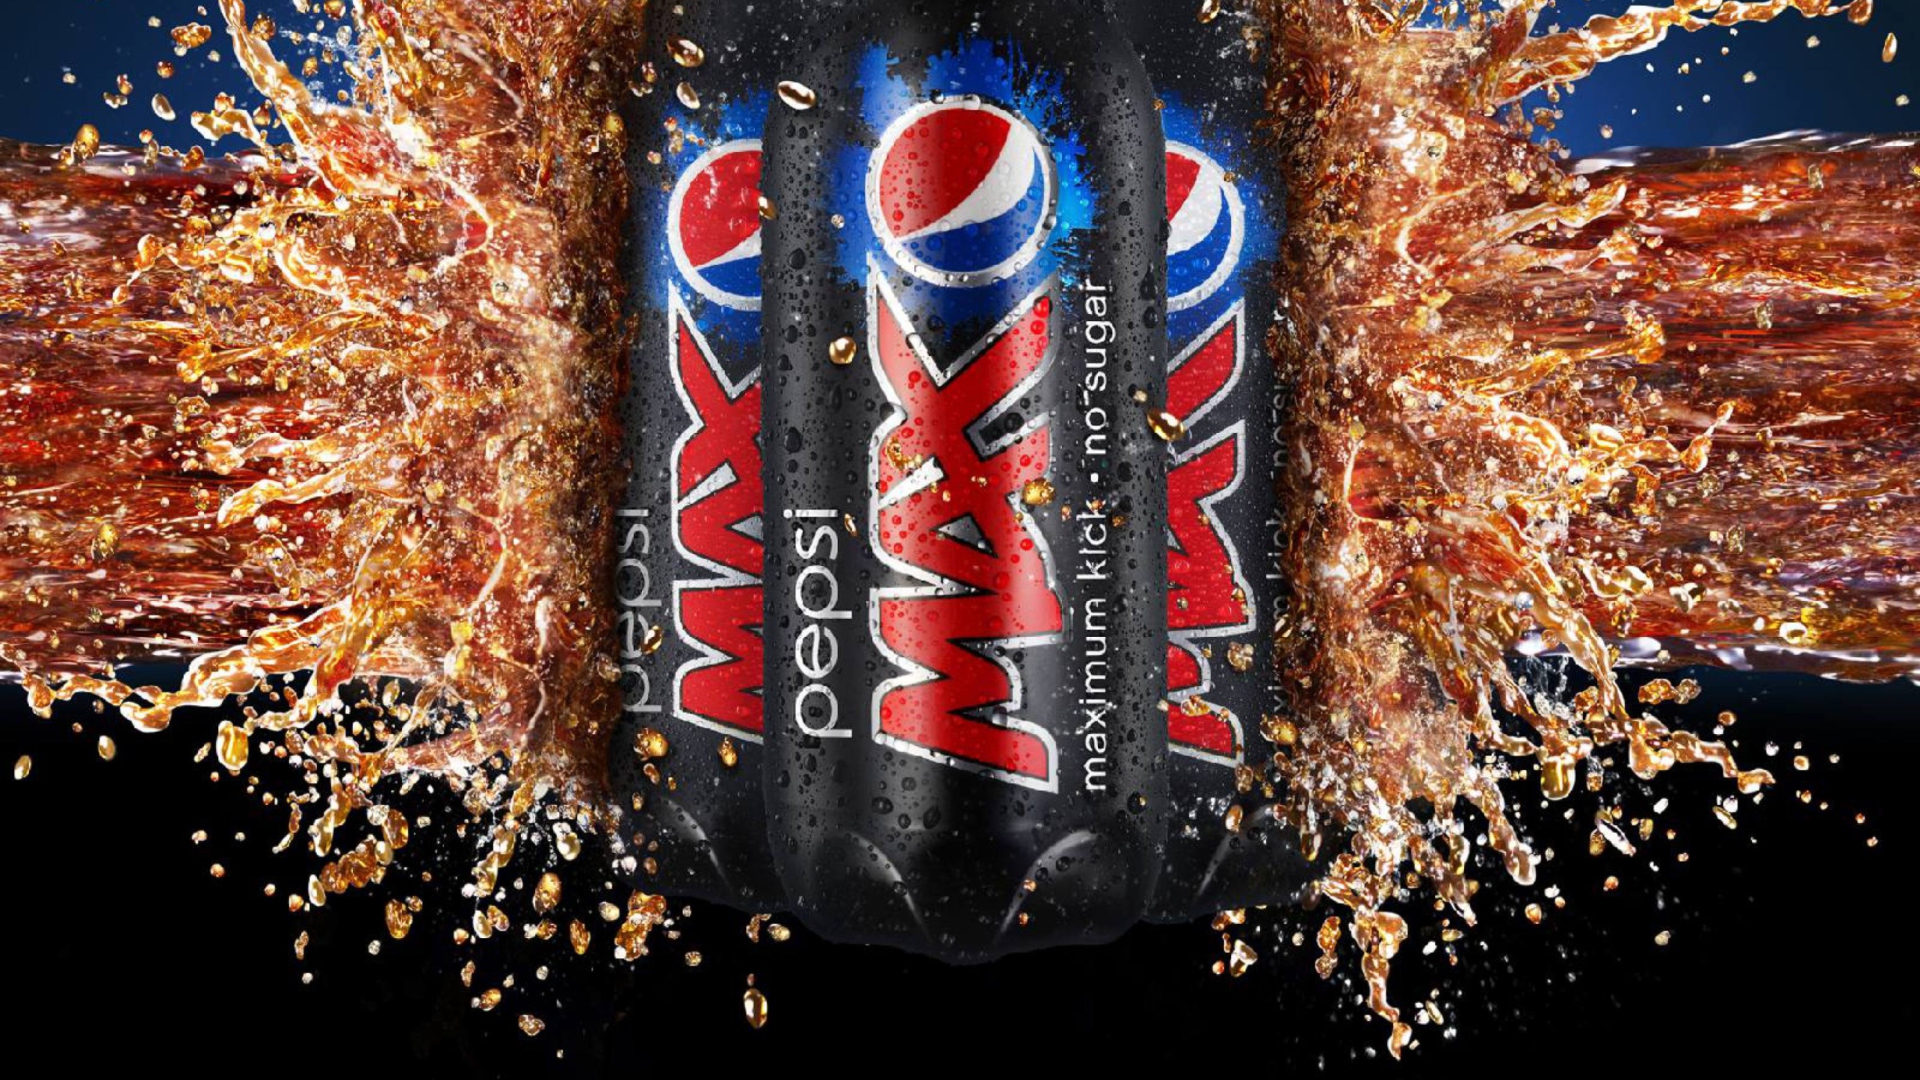 Das Pepsi Max Wallpaper 1920x1080